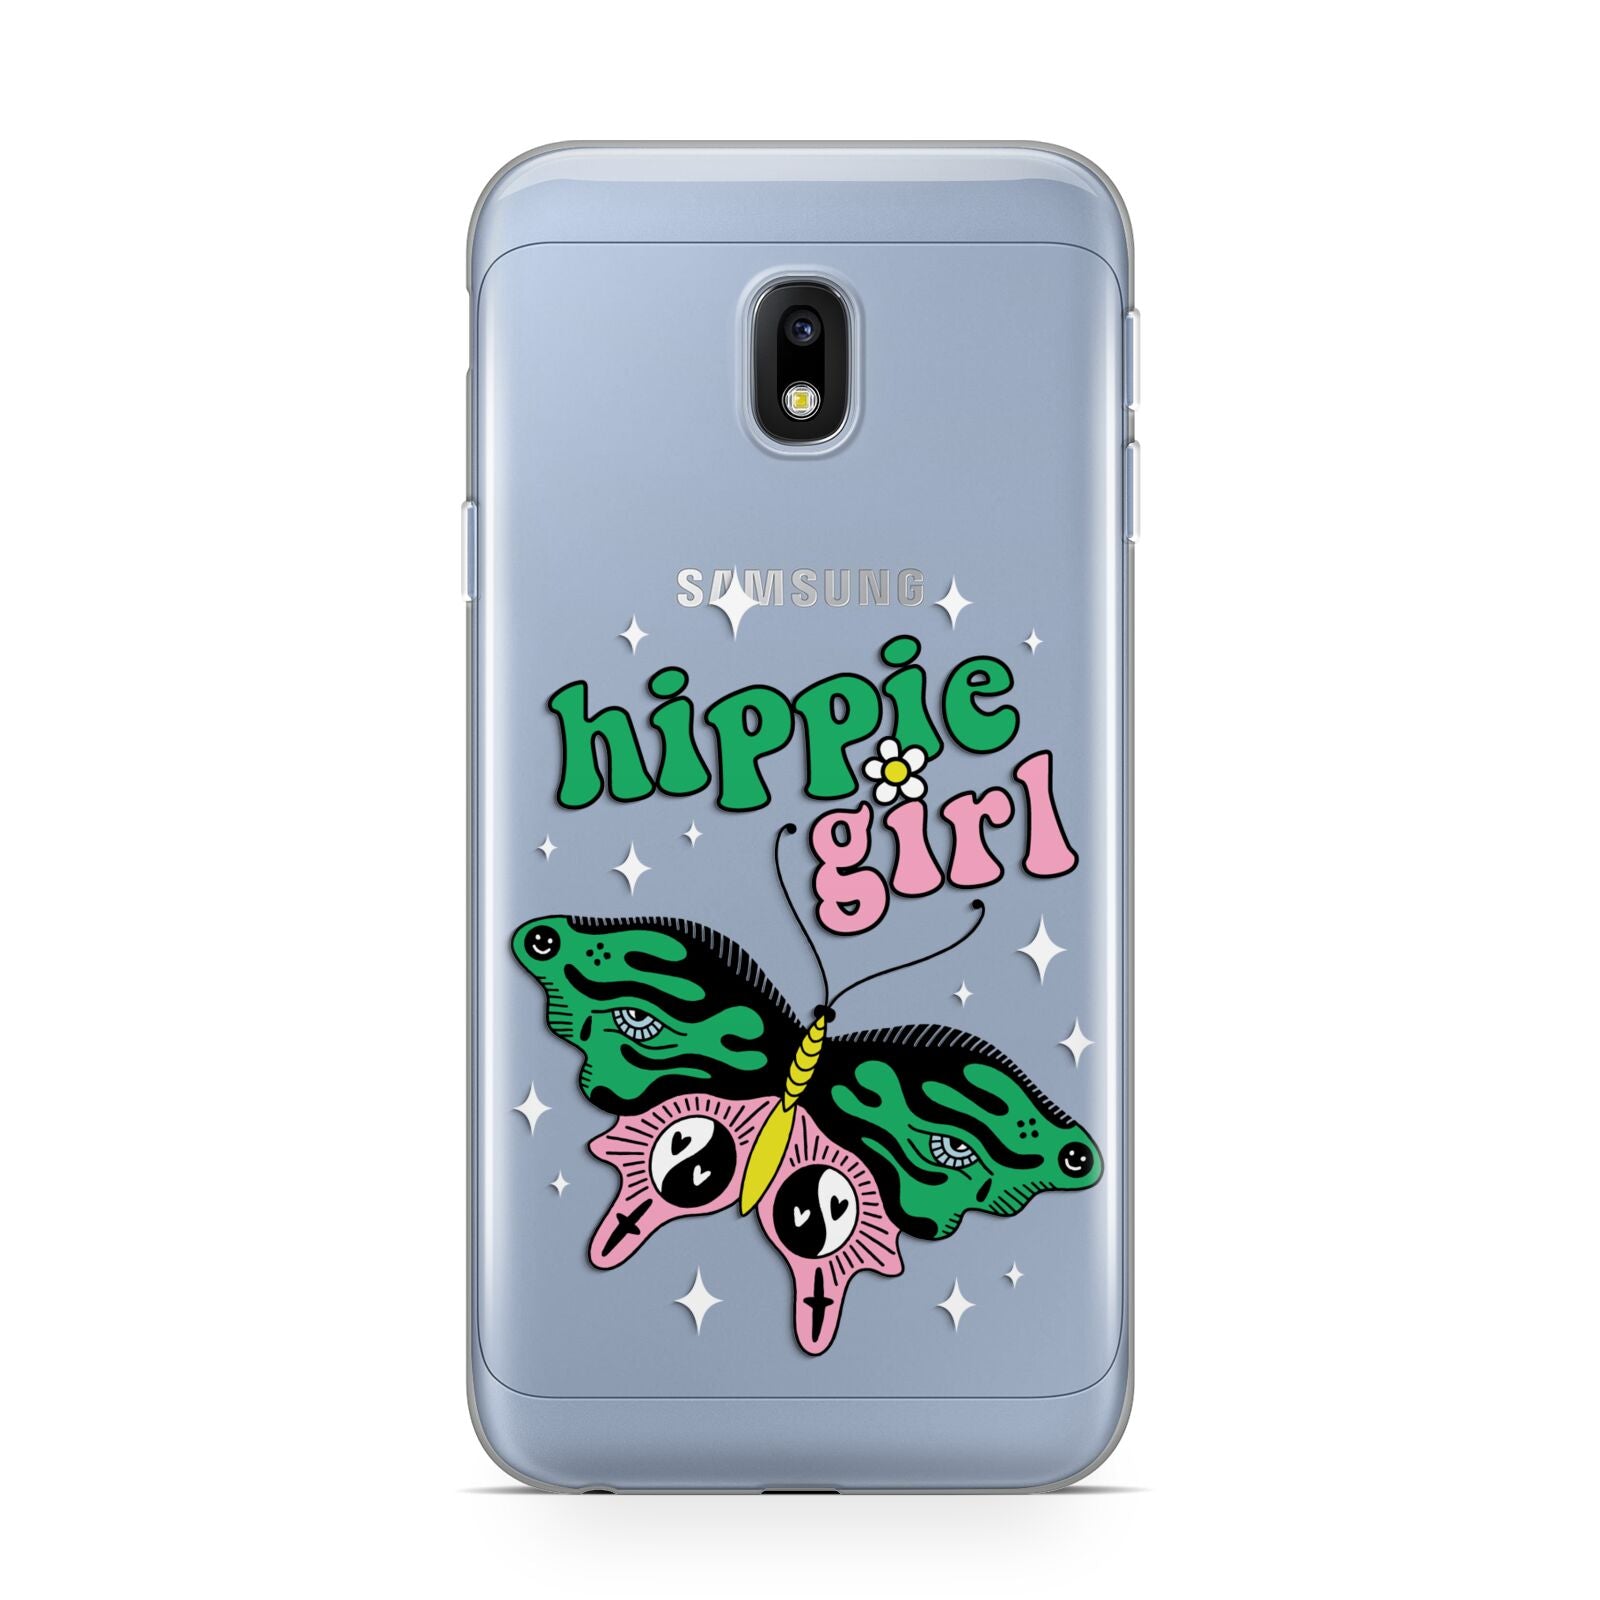 Hippie Girl Samsung Galaxy J3 2017 Case